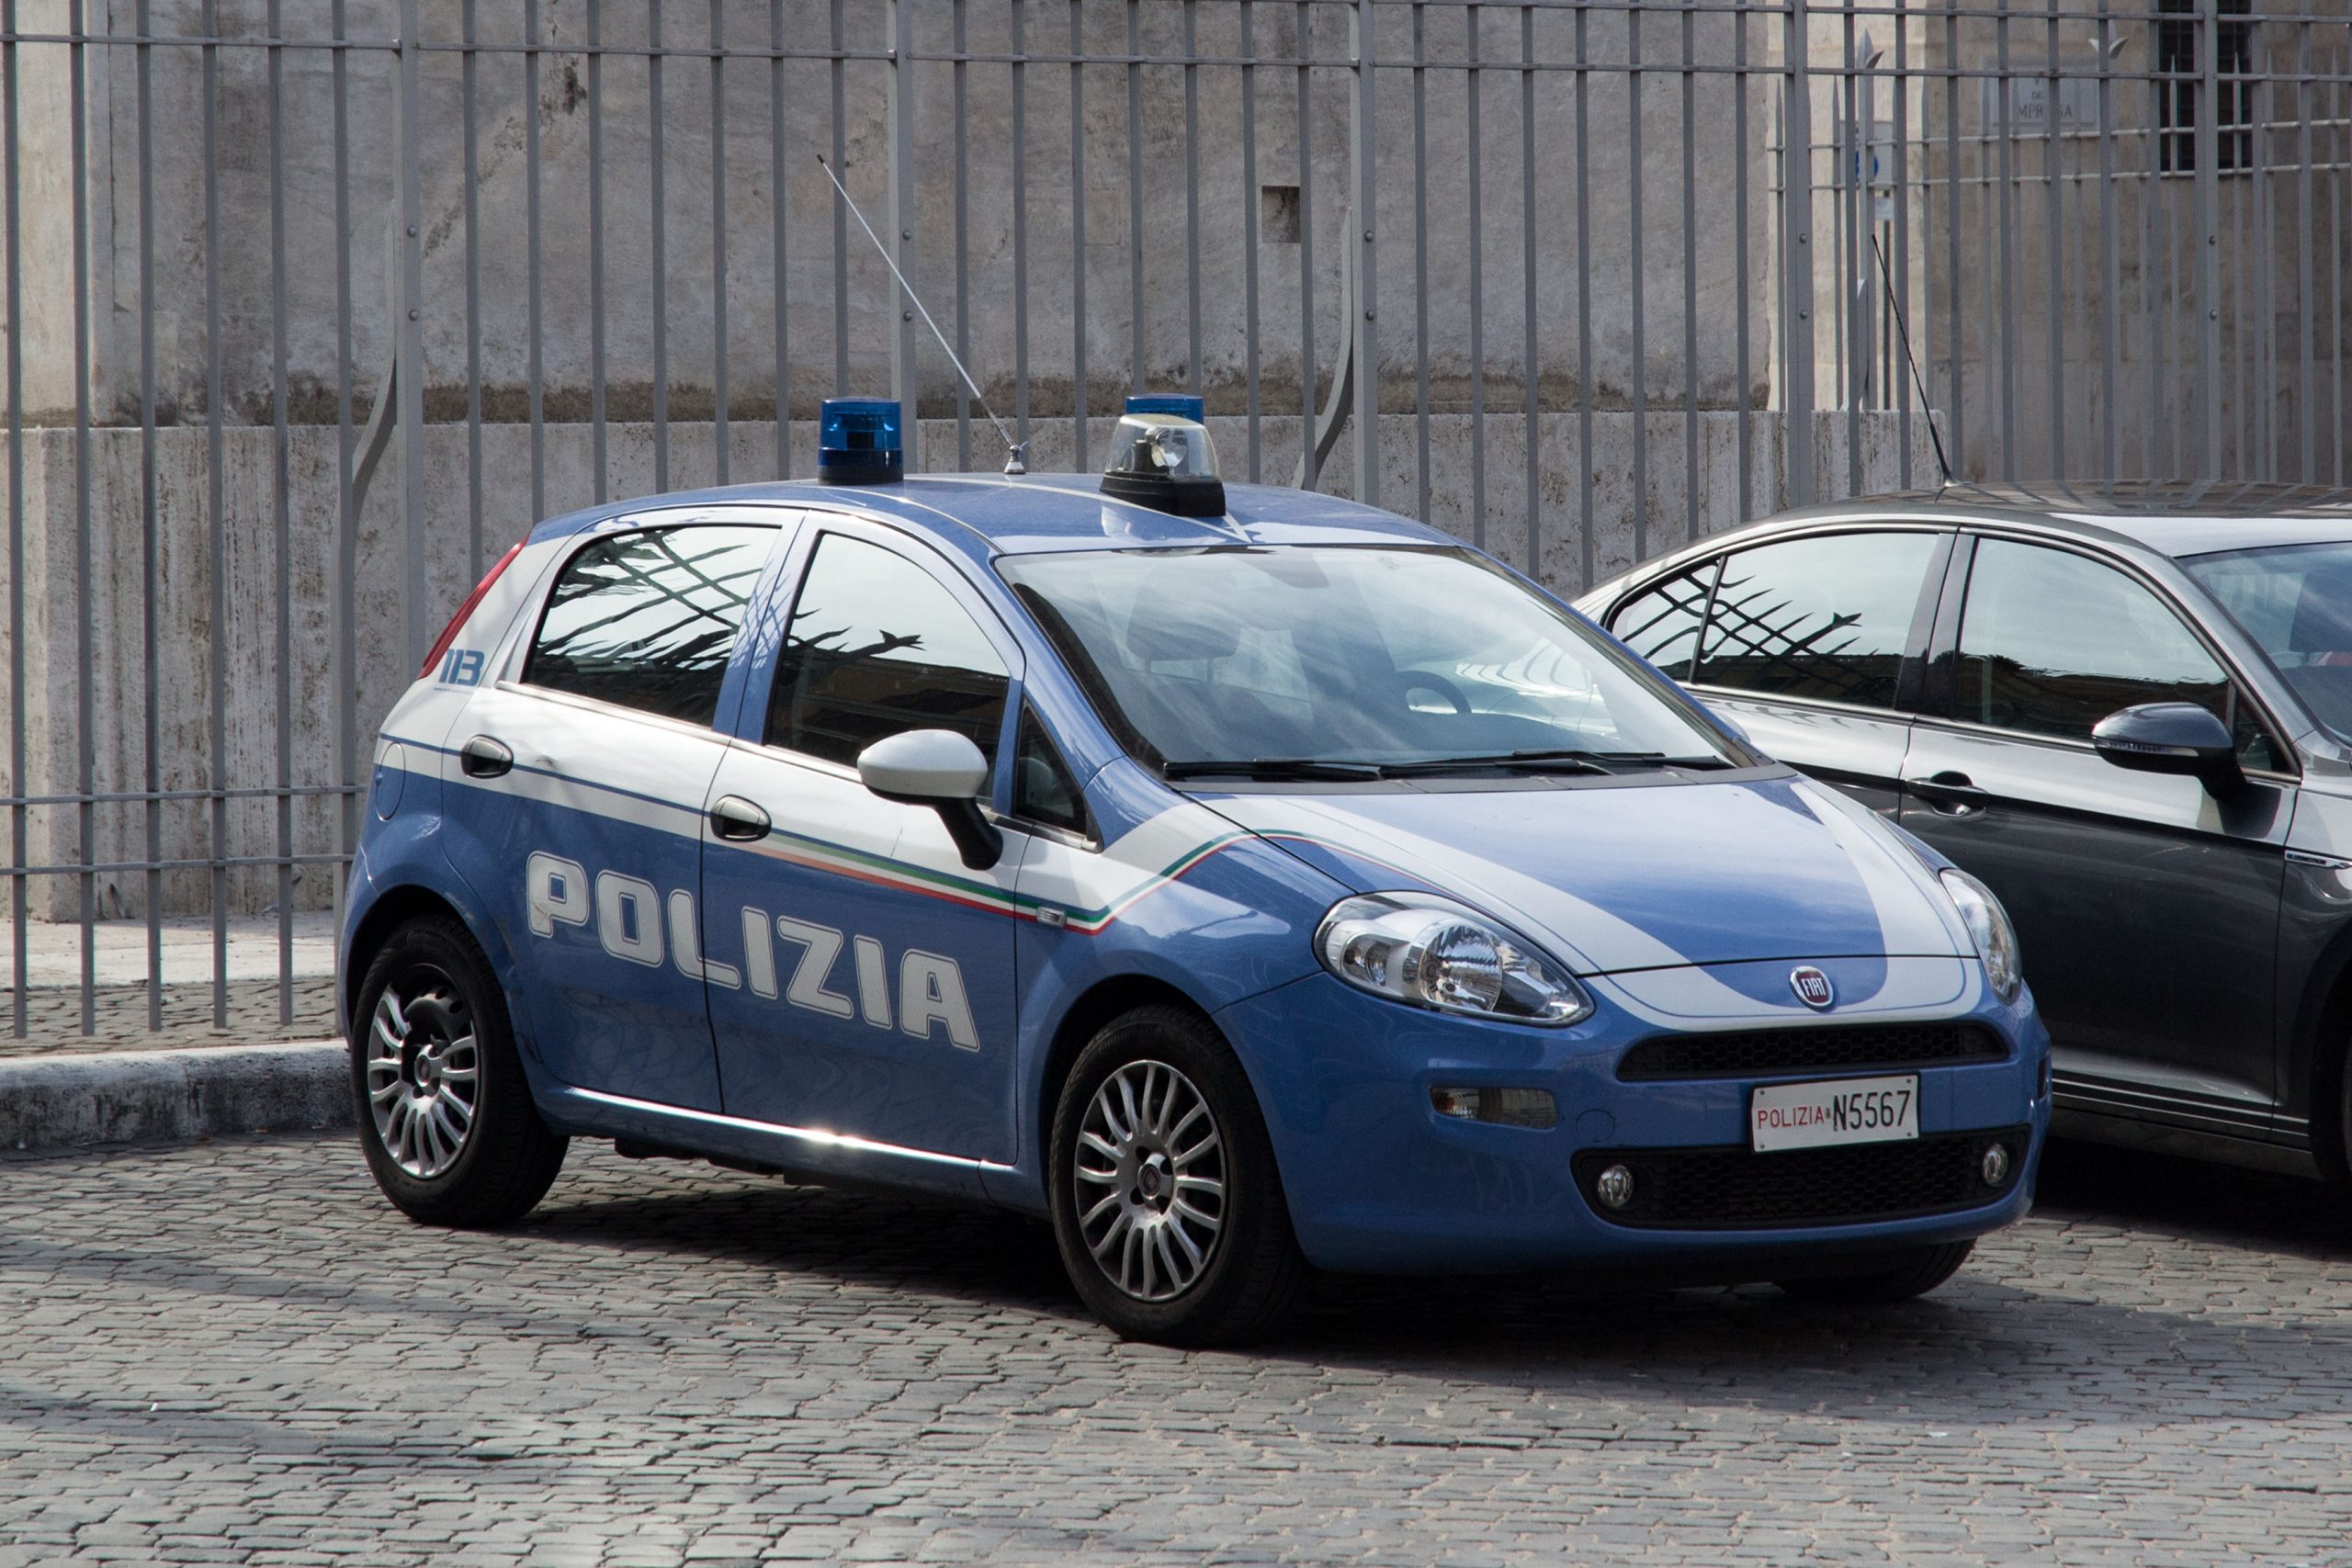 ‘Ndrangheta, omicidio, estorsione e usura: 17 arresti a Reggio Calabria